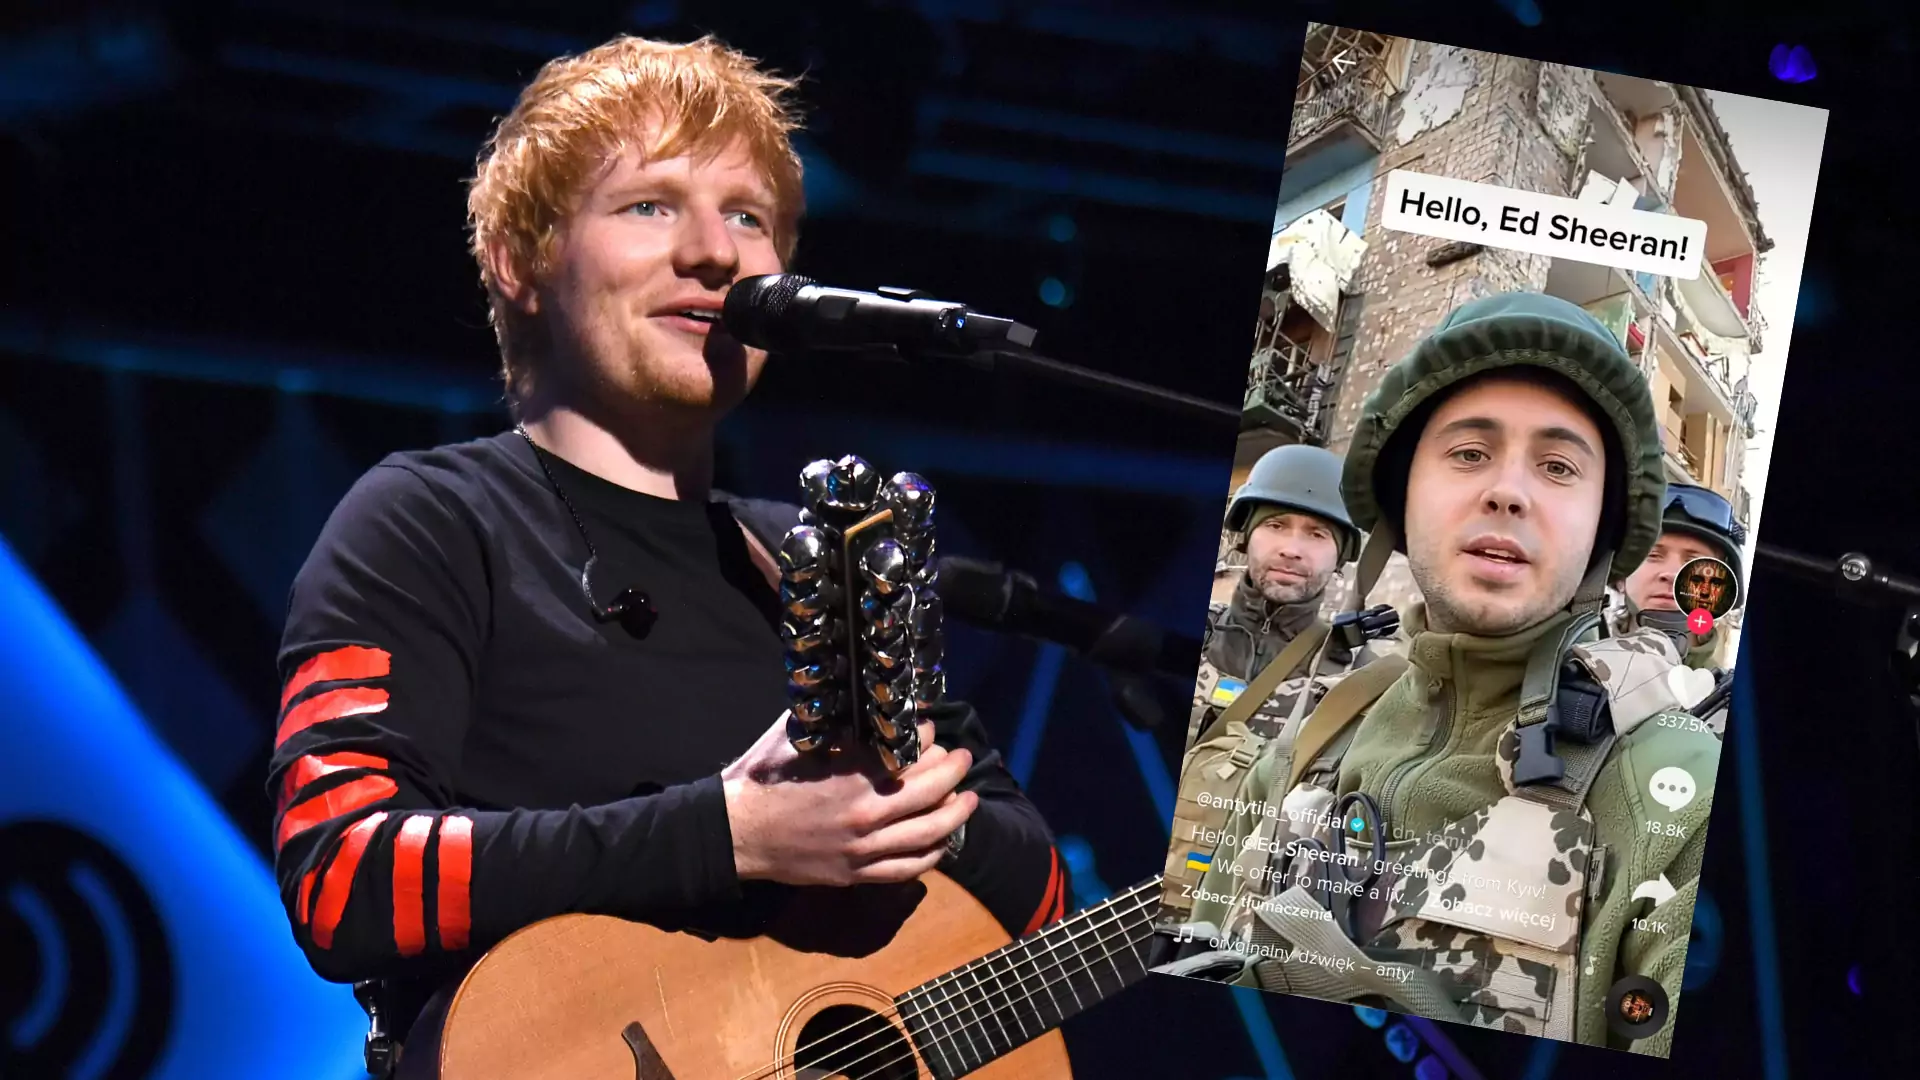 Ukraiński zespół zwrócił się z propozycją do Eda Sheerana. "Połączmy siły"